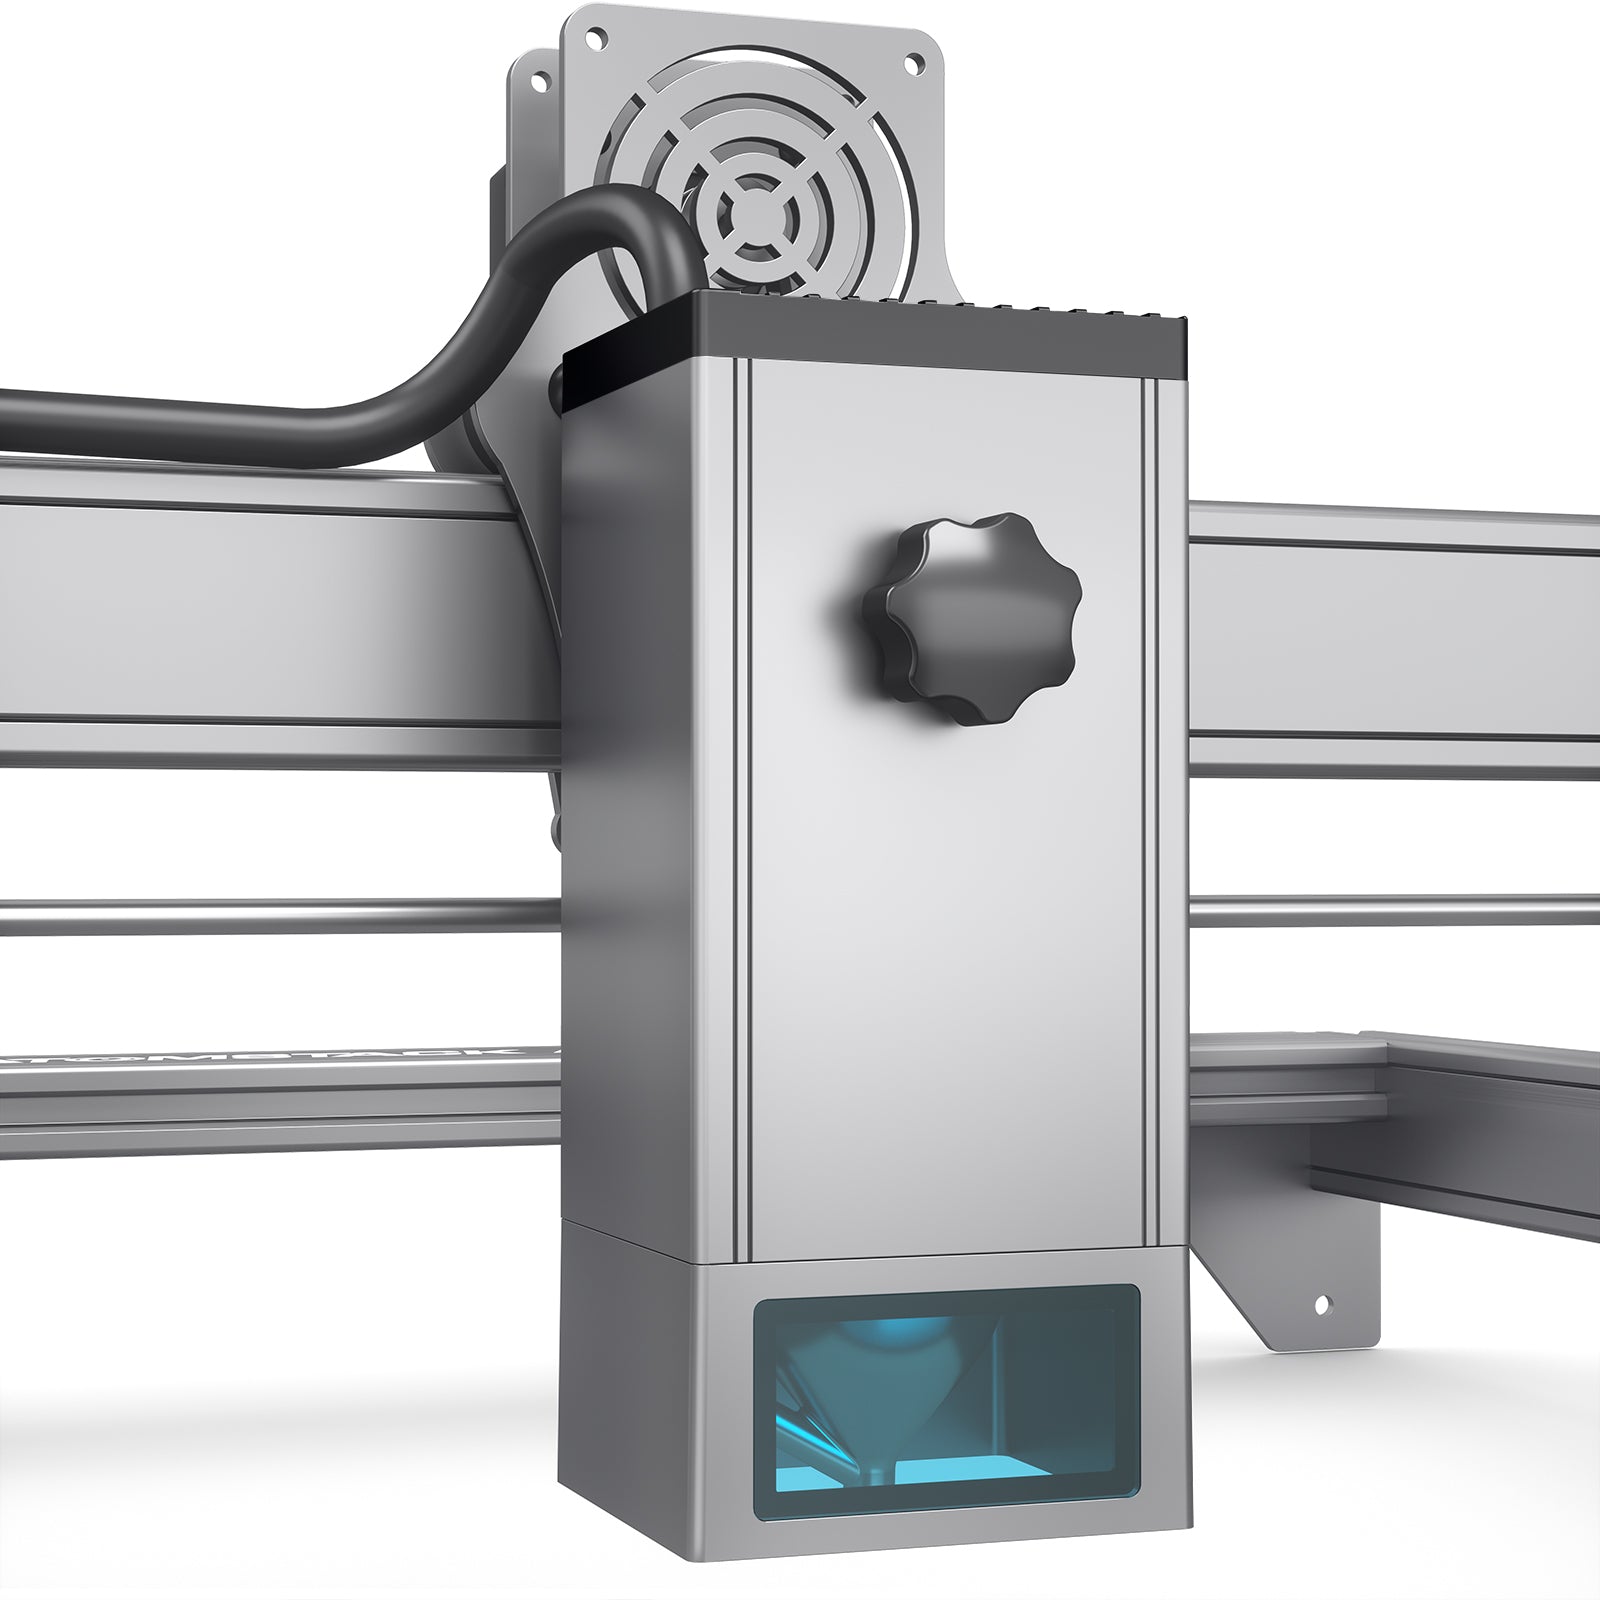 Système d'assistance d'air de pompe à air Geekcreit silencieux et à haut  débit pour les graveurs Laser Machine de gravure Laser LBTN